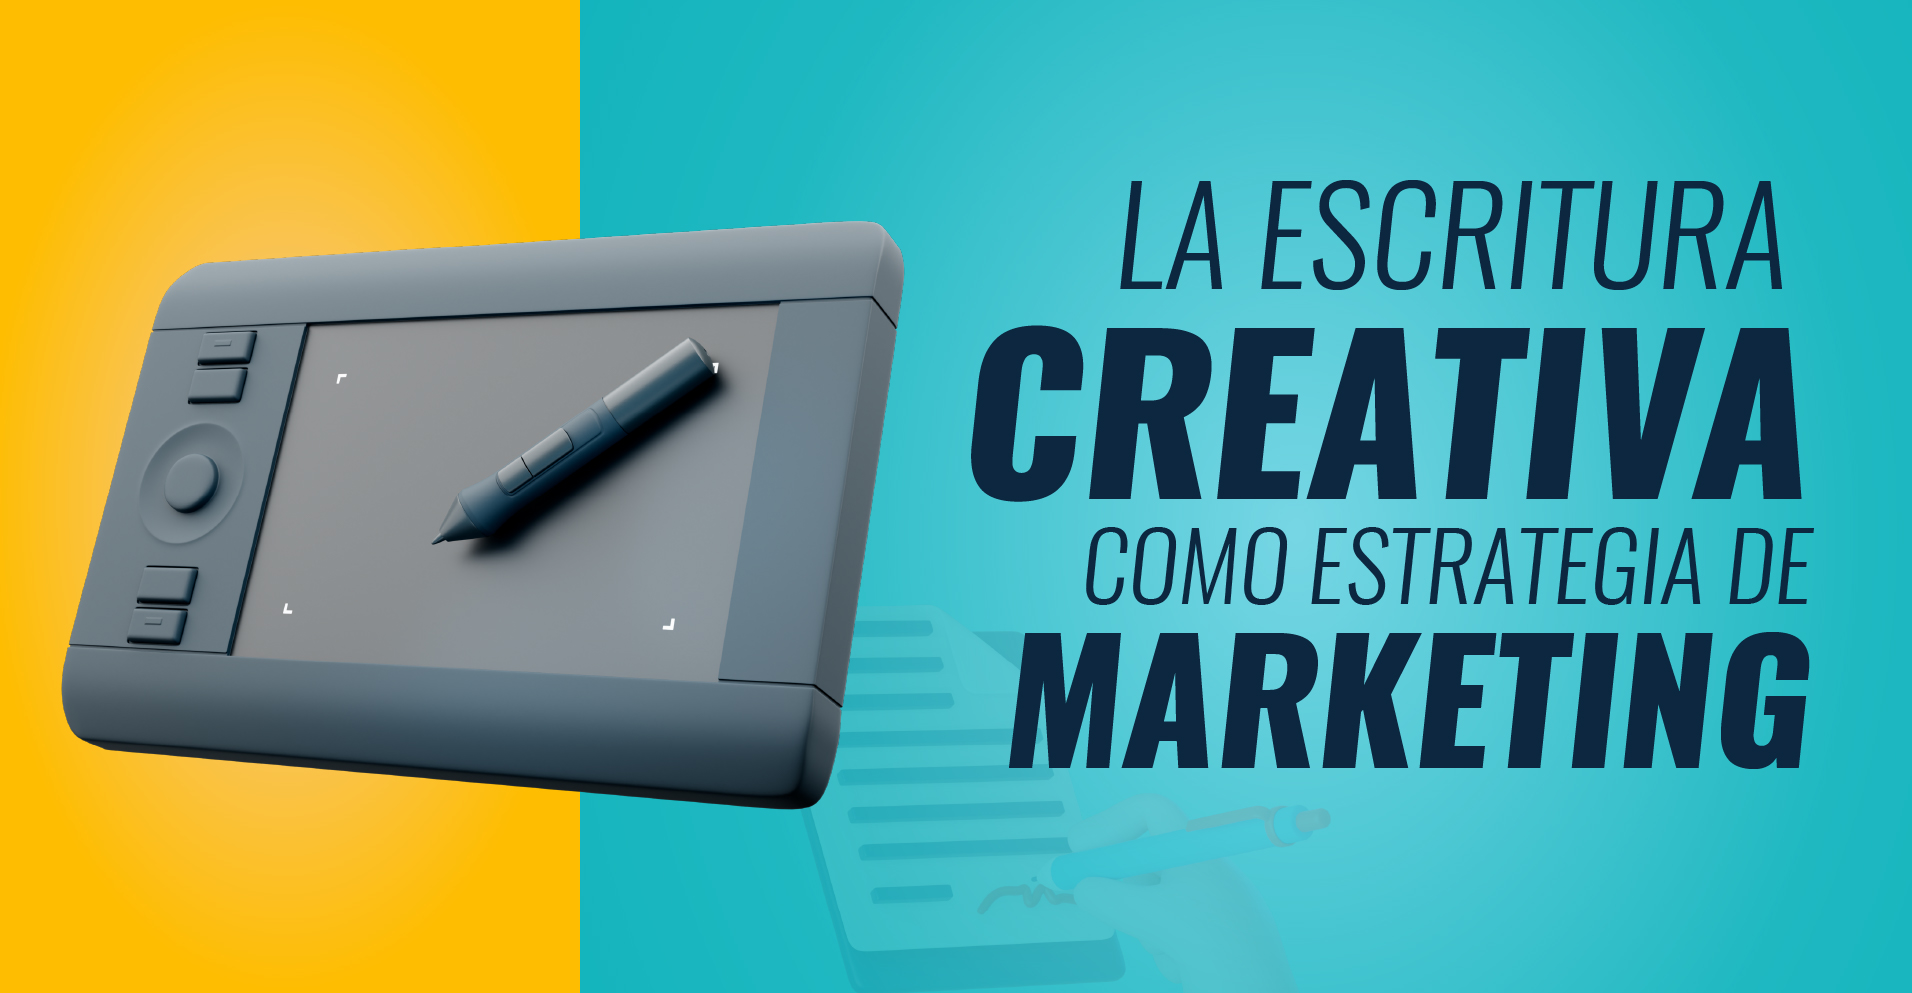 Imagen: La escritura creativa como estrategia de marketing.jpg